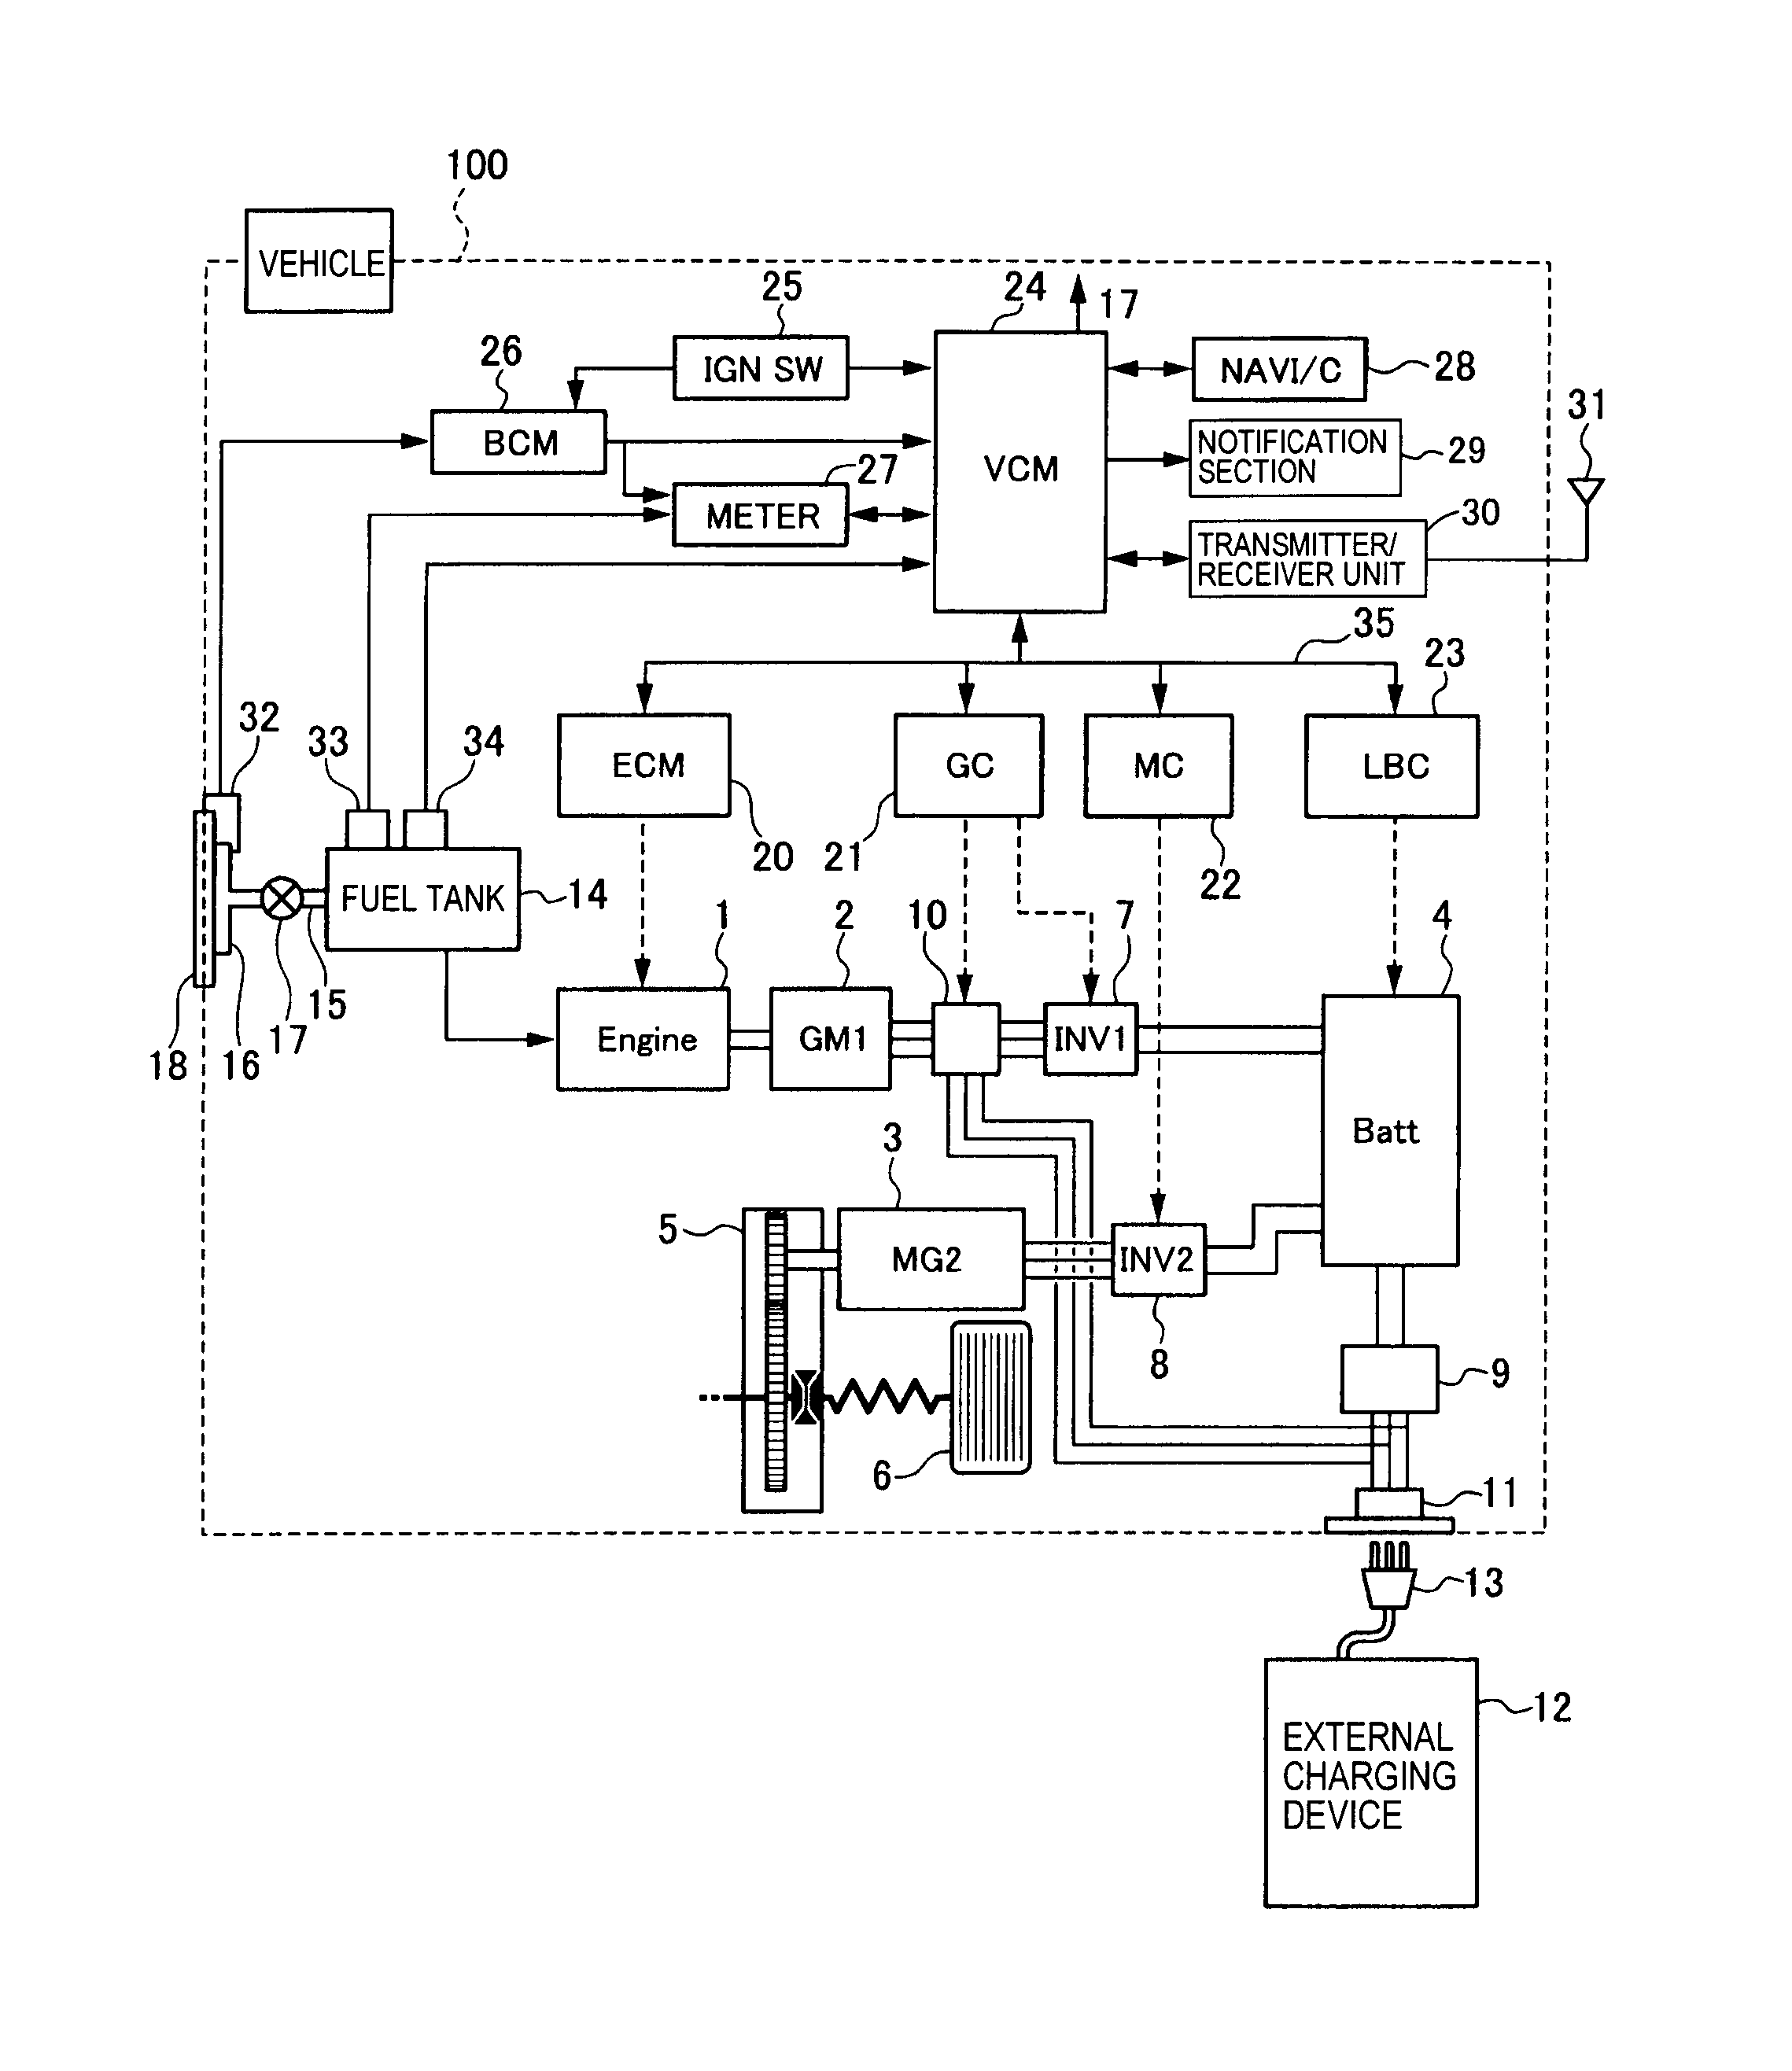 goodman phk036-1 wiring diagram